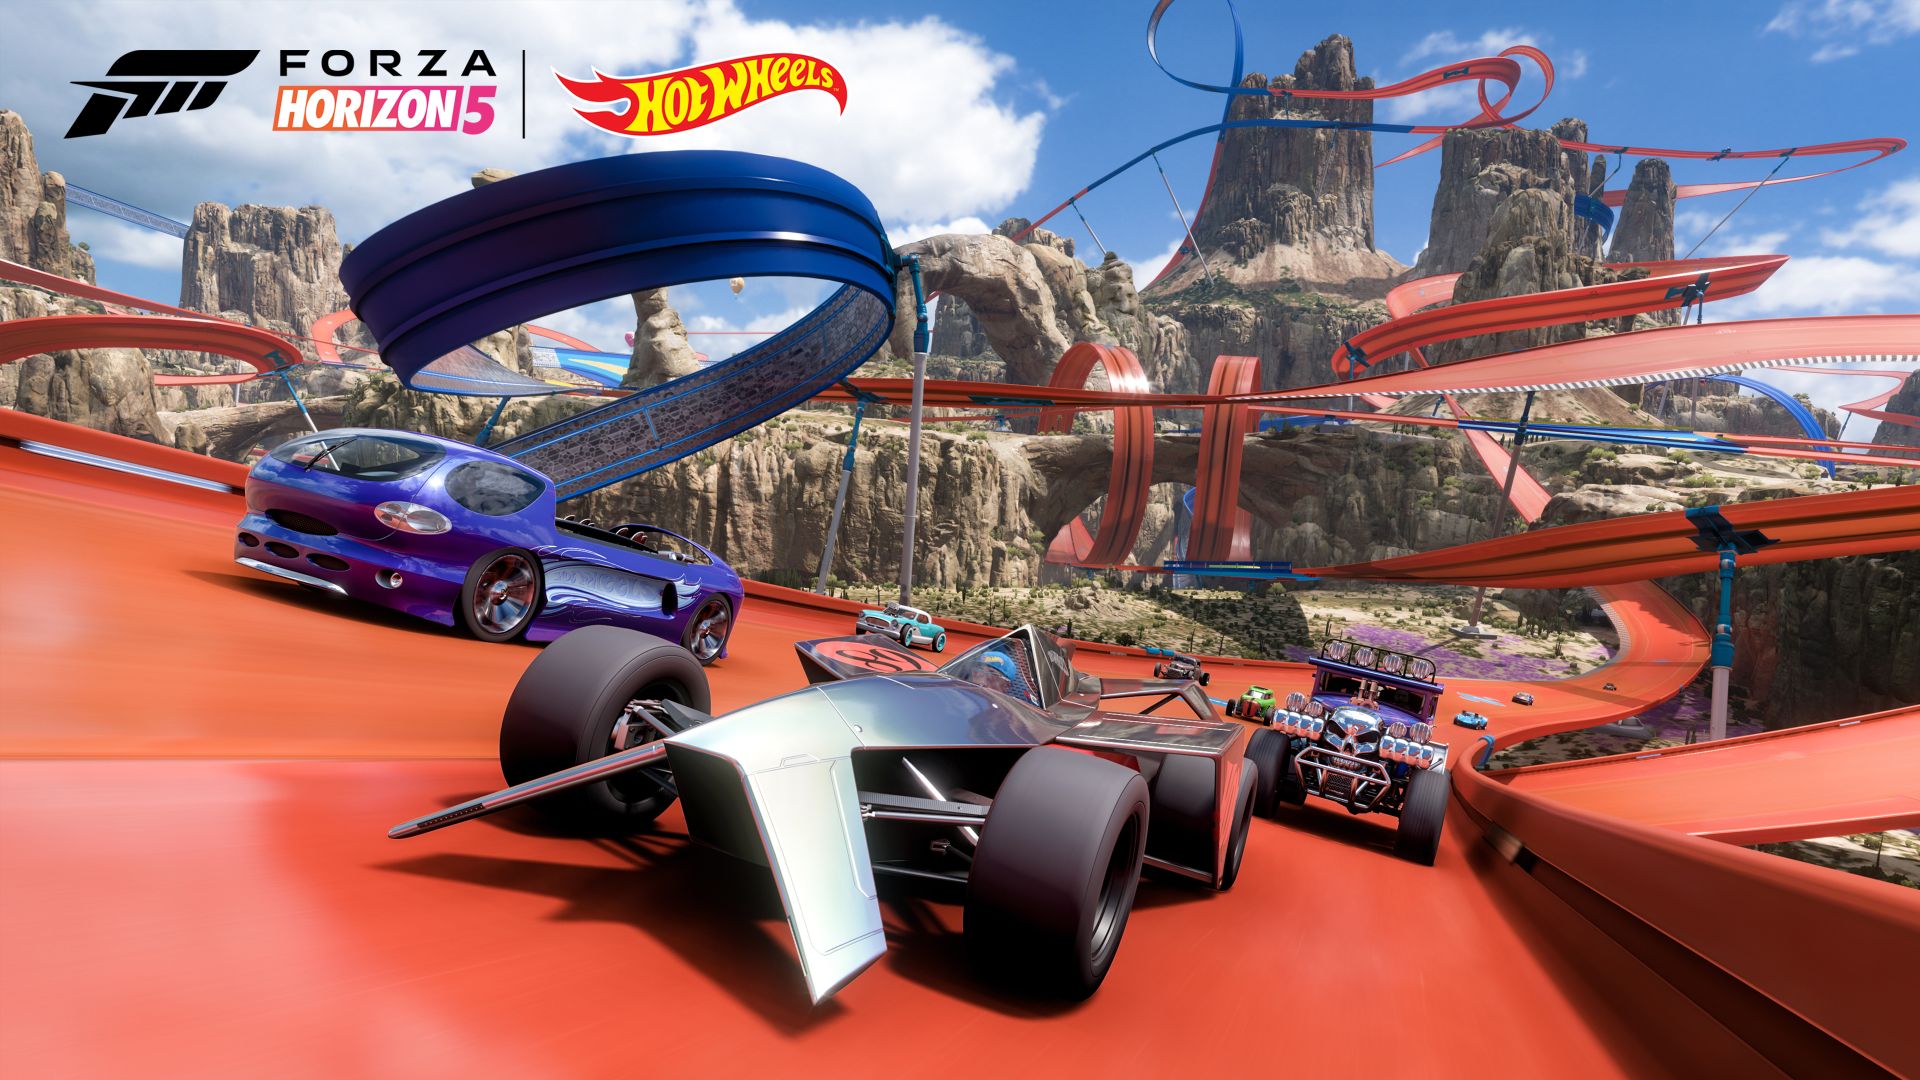 Forza Horizon 5: Hot Wheels - grafika promocyjna